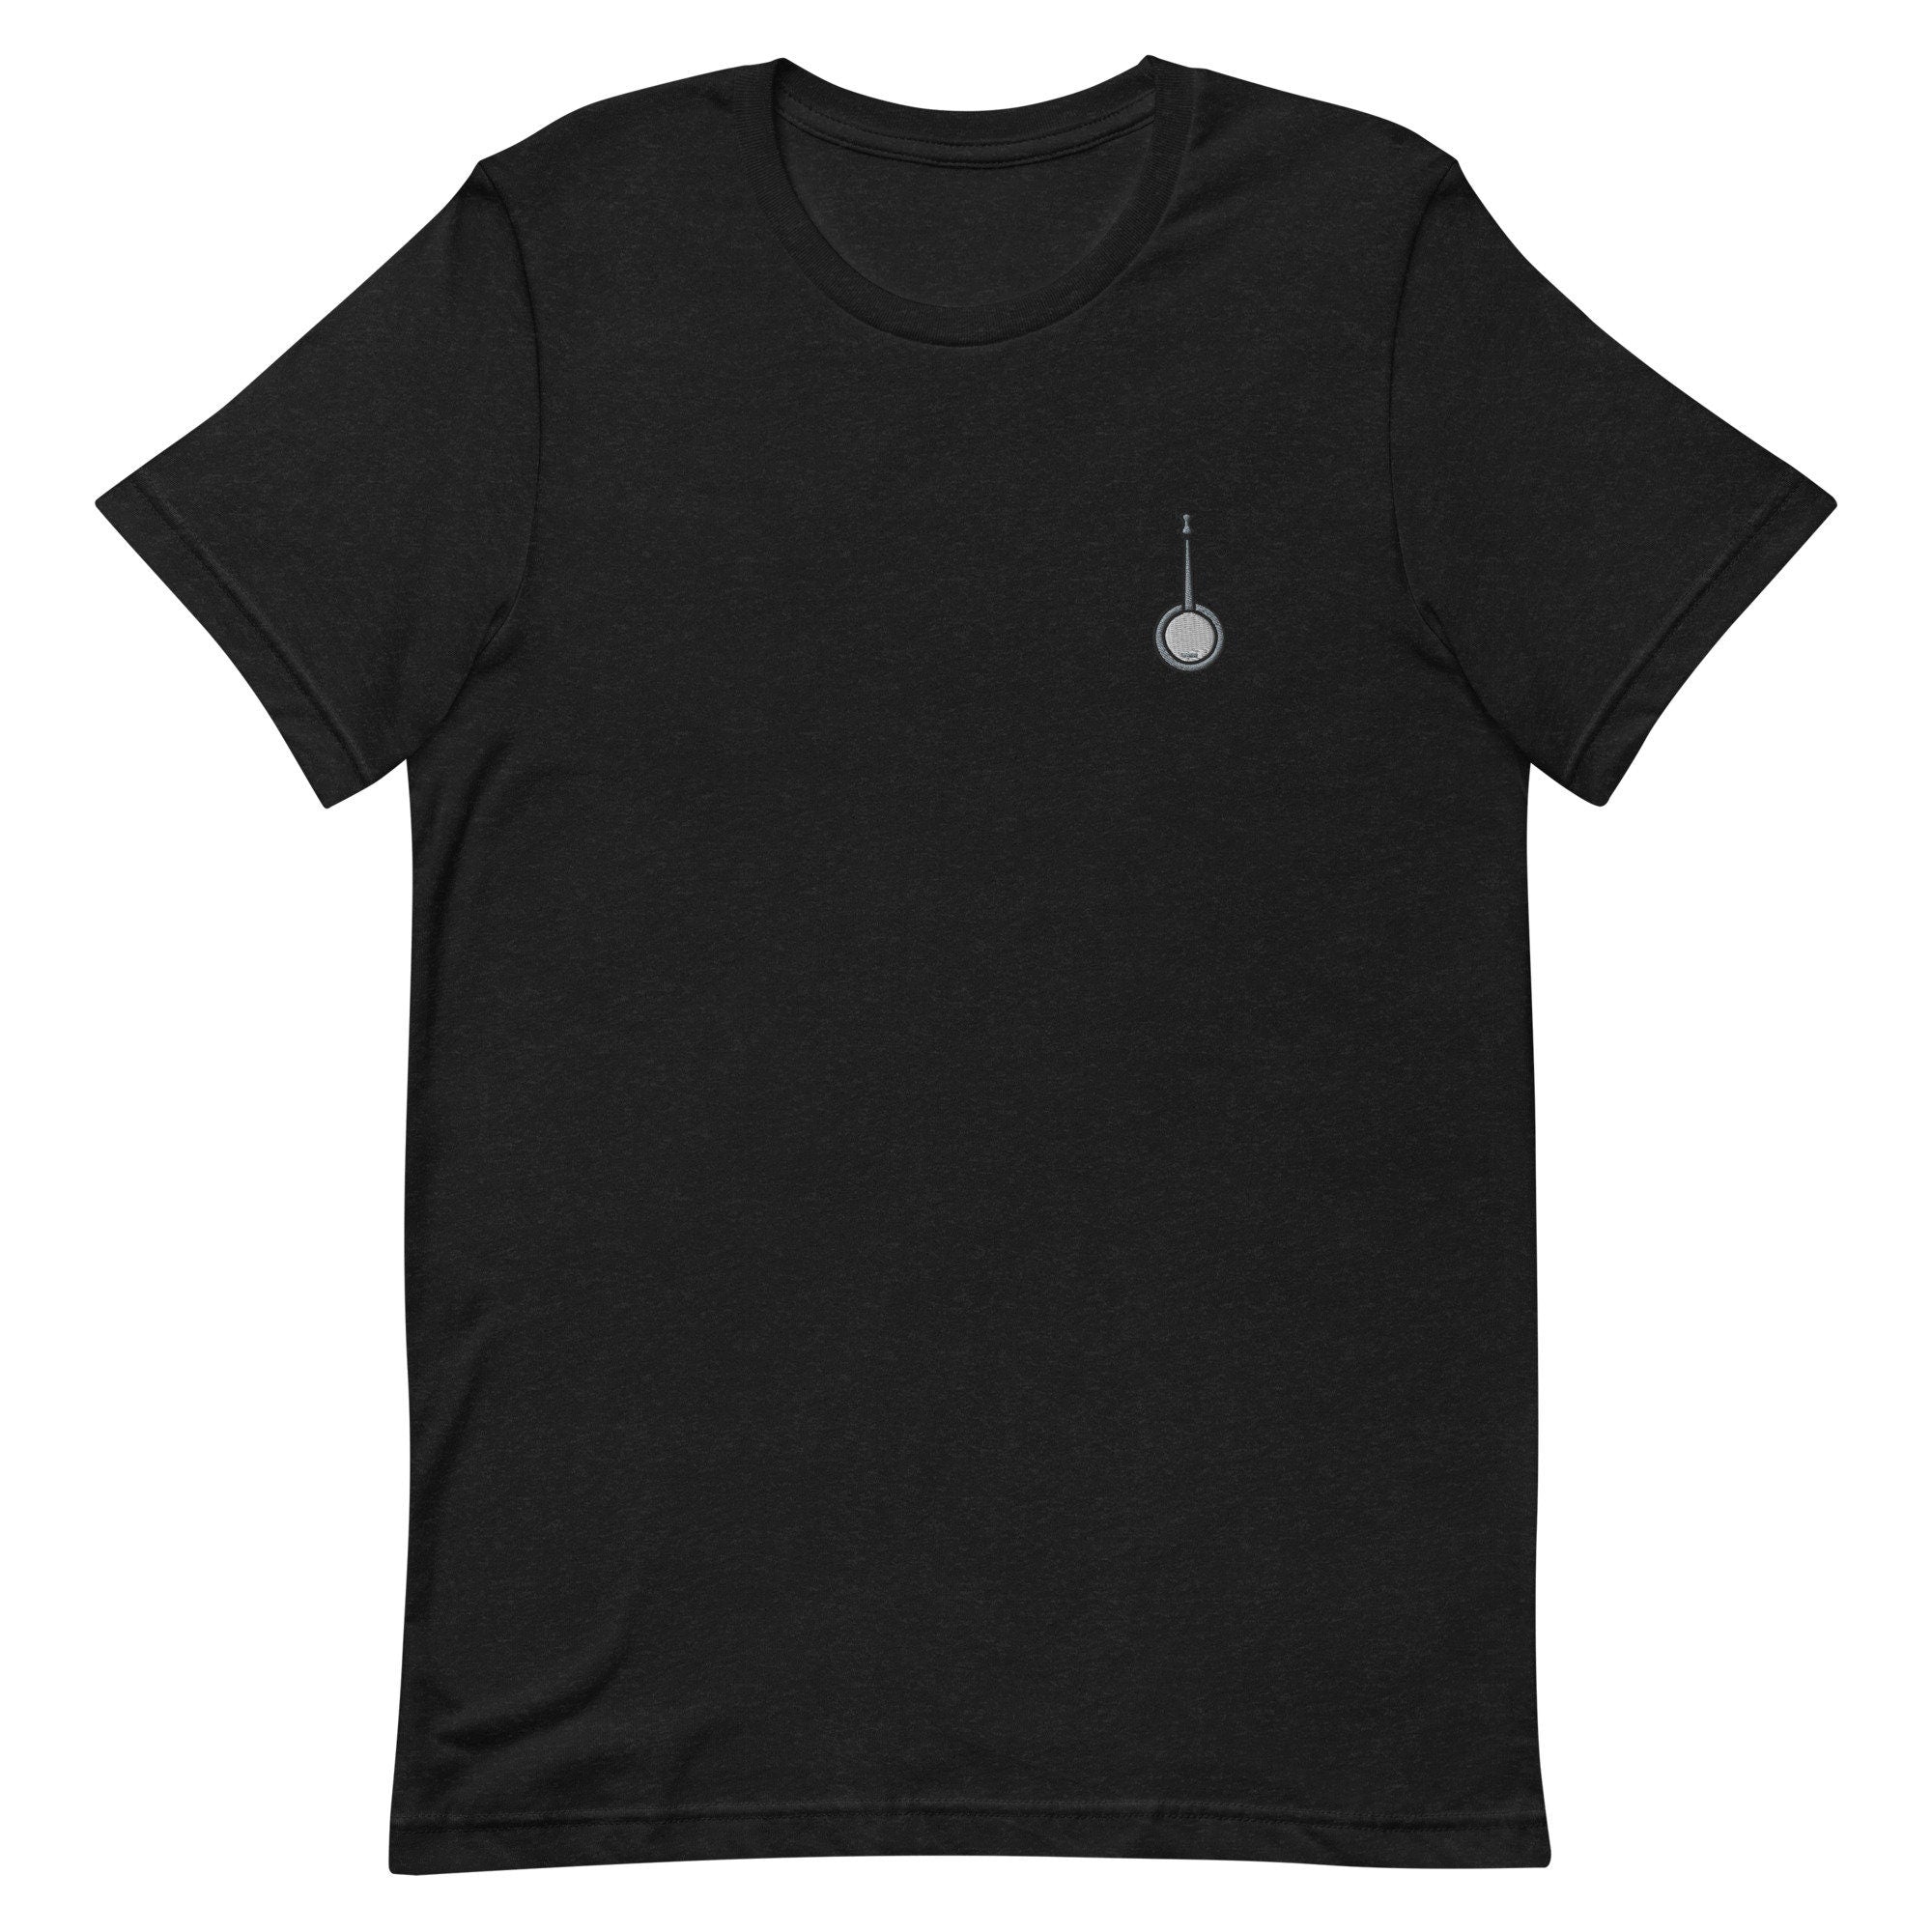 Banjo Premium Men's T-Shirt, Embroidered Men's T-Shirt Gift for Boyfriend, Men's Short Sleeve Shirt - Multiple Colors